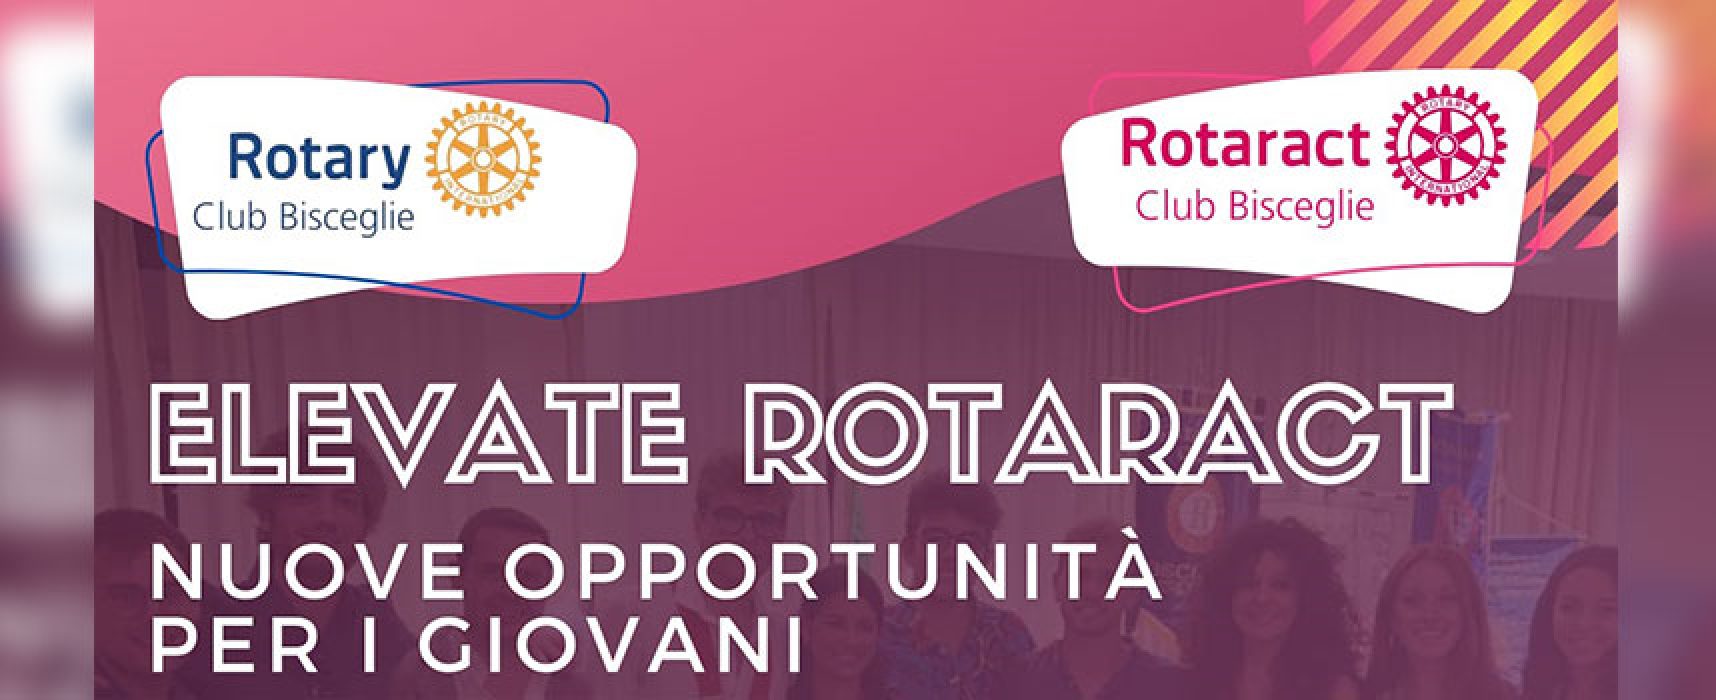 Elevate Rotaract, un incontro sulle opportunità offerte ai giovani